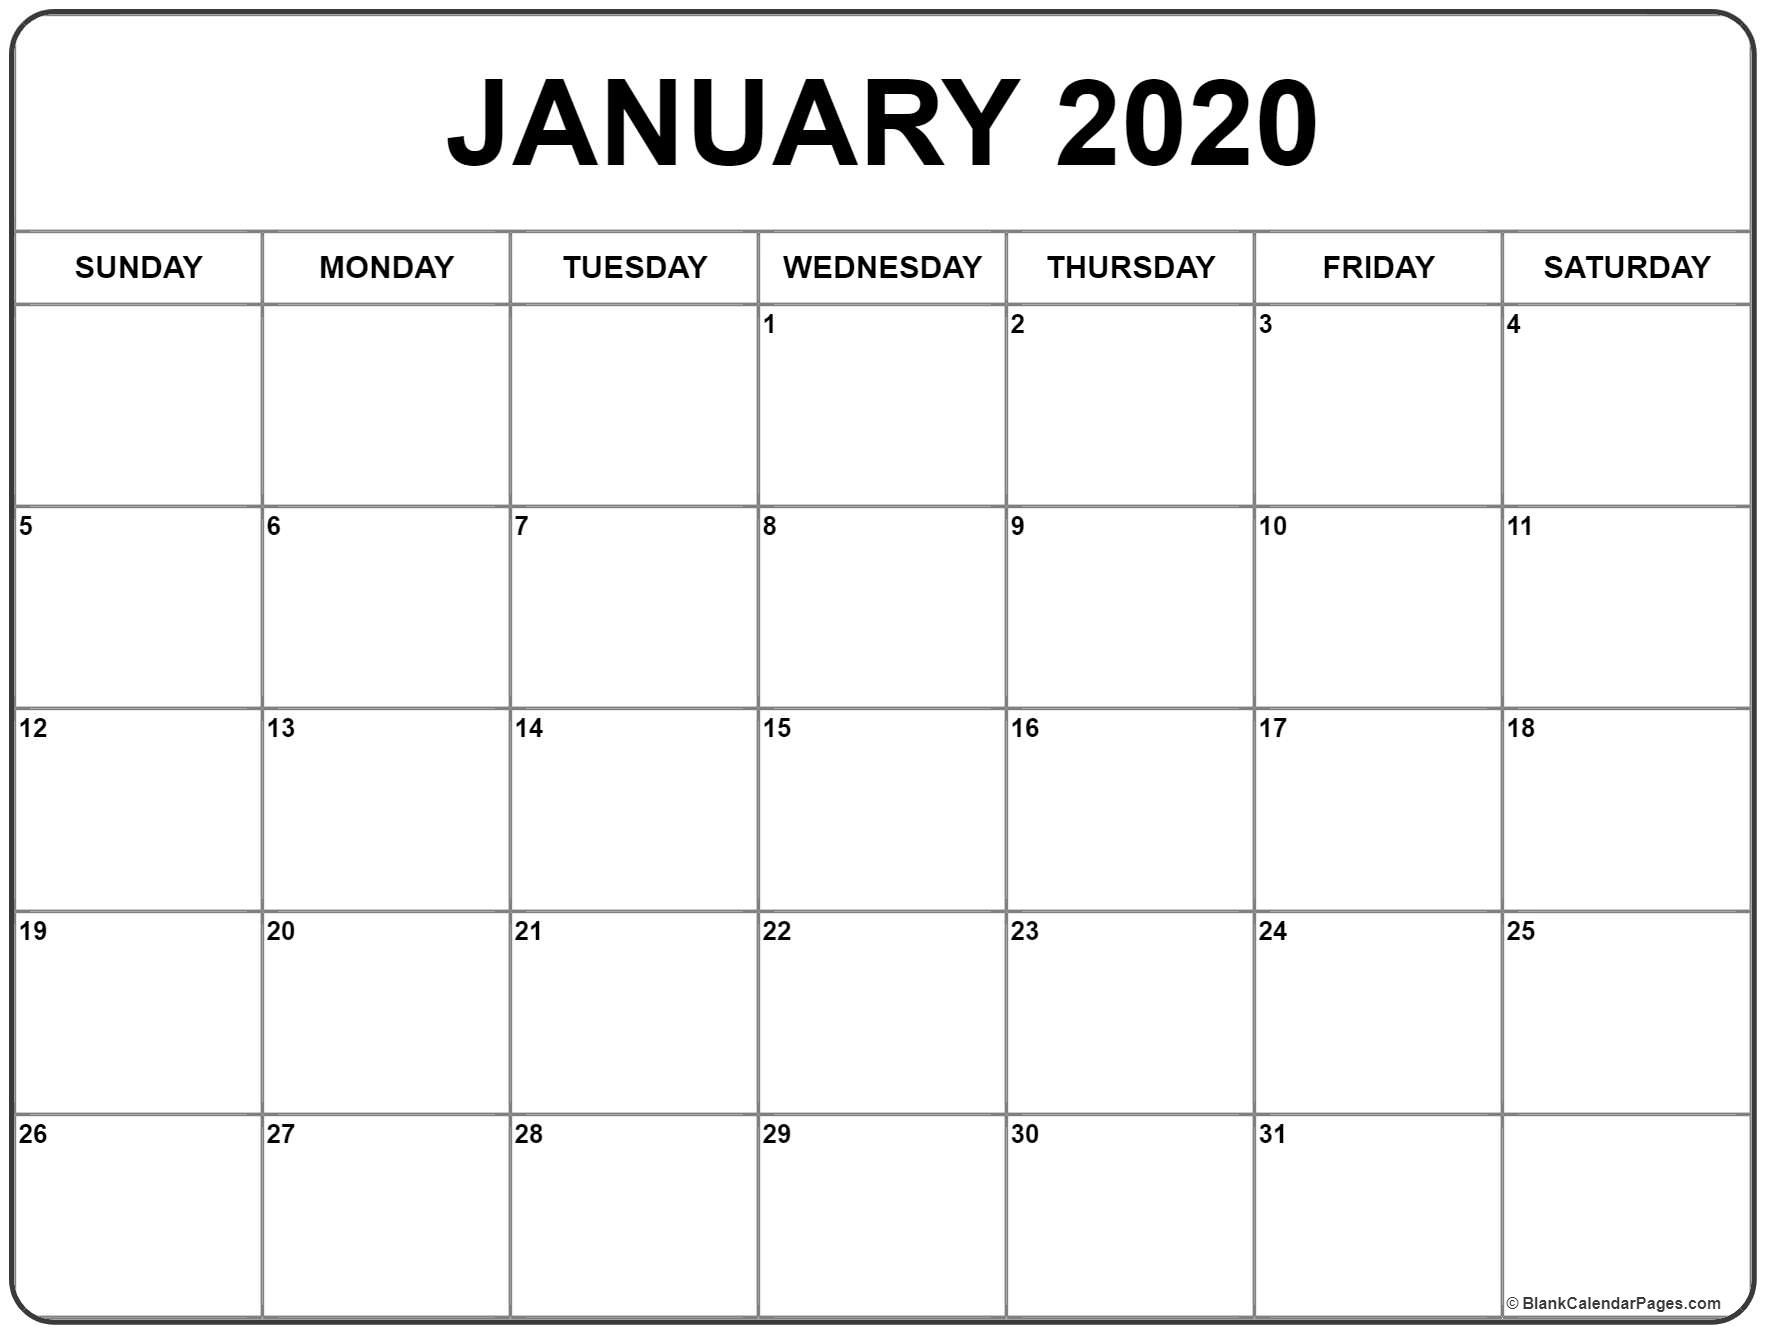 Blank Calendar Jan 2020 Printable January 2020 Calendar | Monthly Extraordinary 2020 Calendar For January